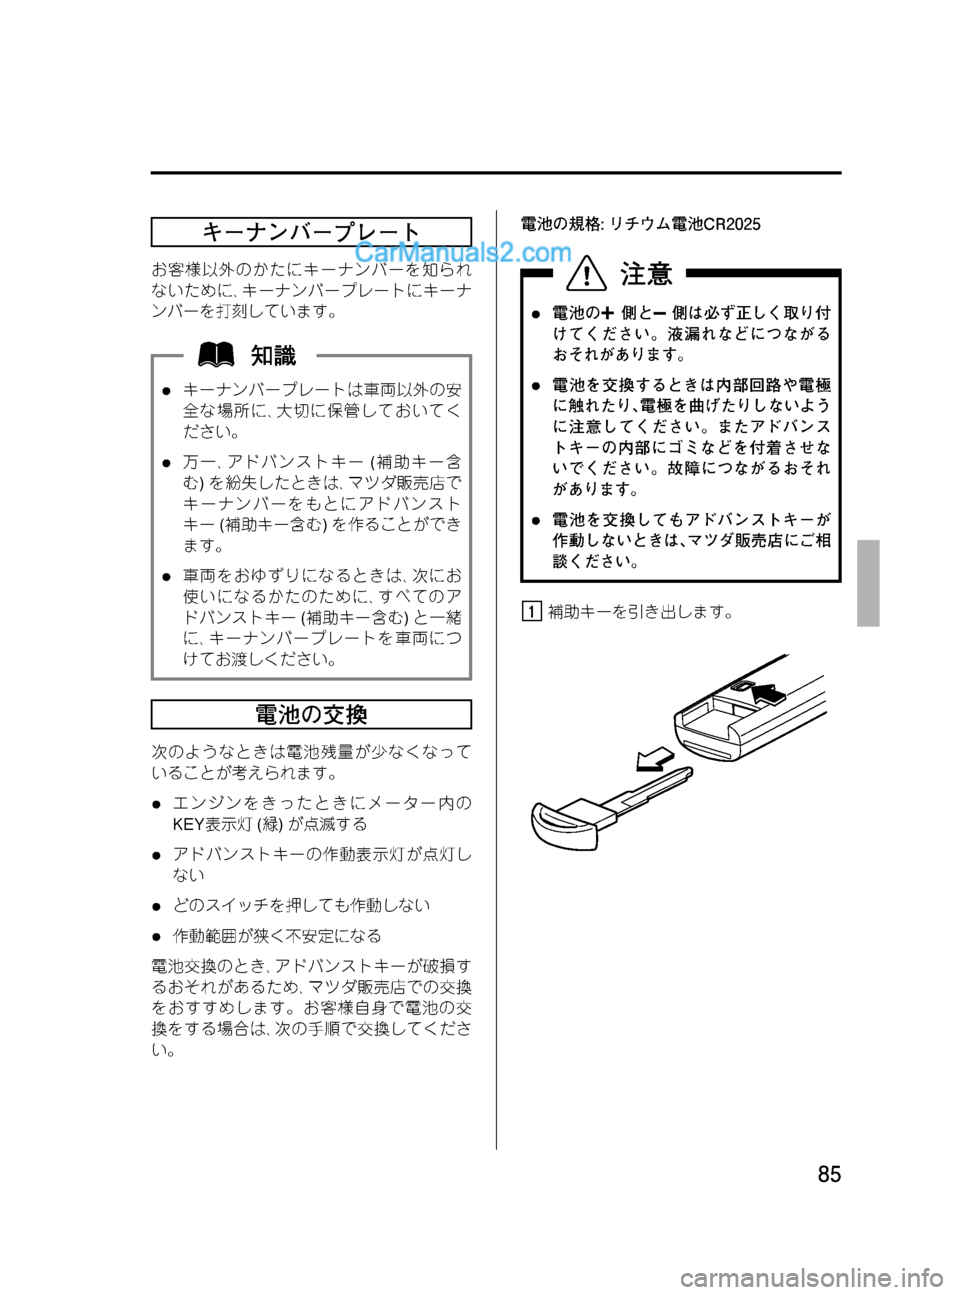 MAZDA MODEL VERISA 2007  ベリーサ｜取扱説明書 (in Japanese) Black plate (85,1)
キーナンバープレート
お客様以外のかたにキーナンバーを知られ
ないために､キーナンバープレートにキーナ
ンバーを打刻していま�